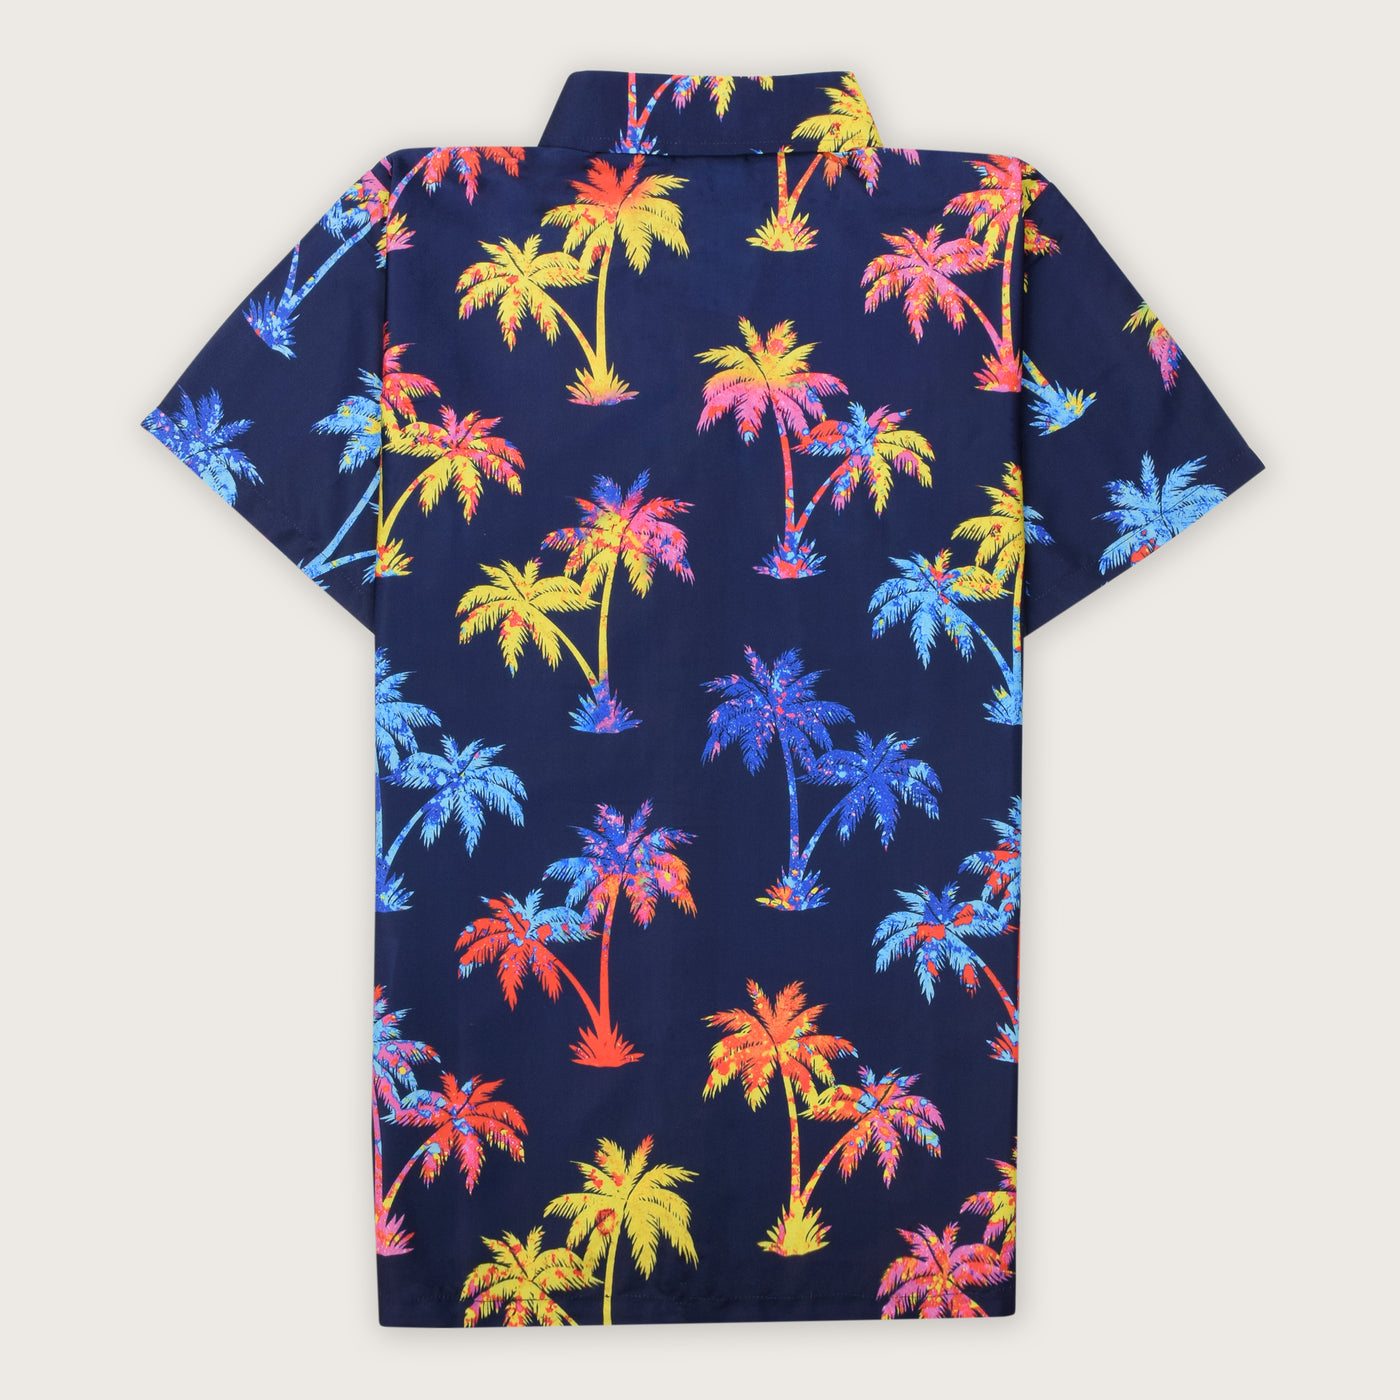 La camisa de las palmeras de colores